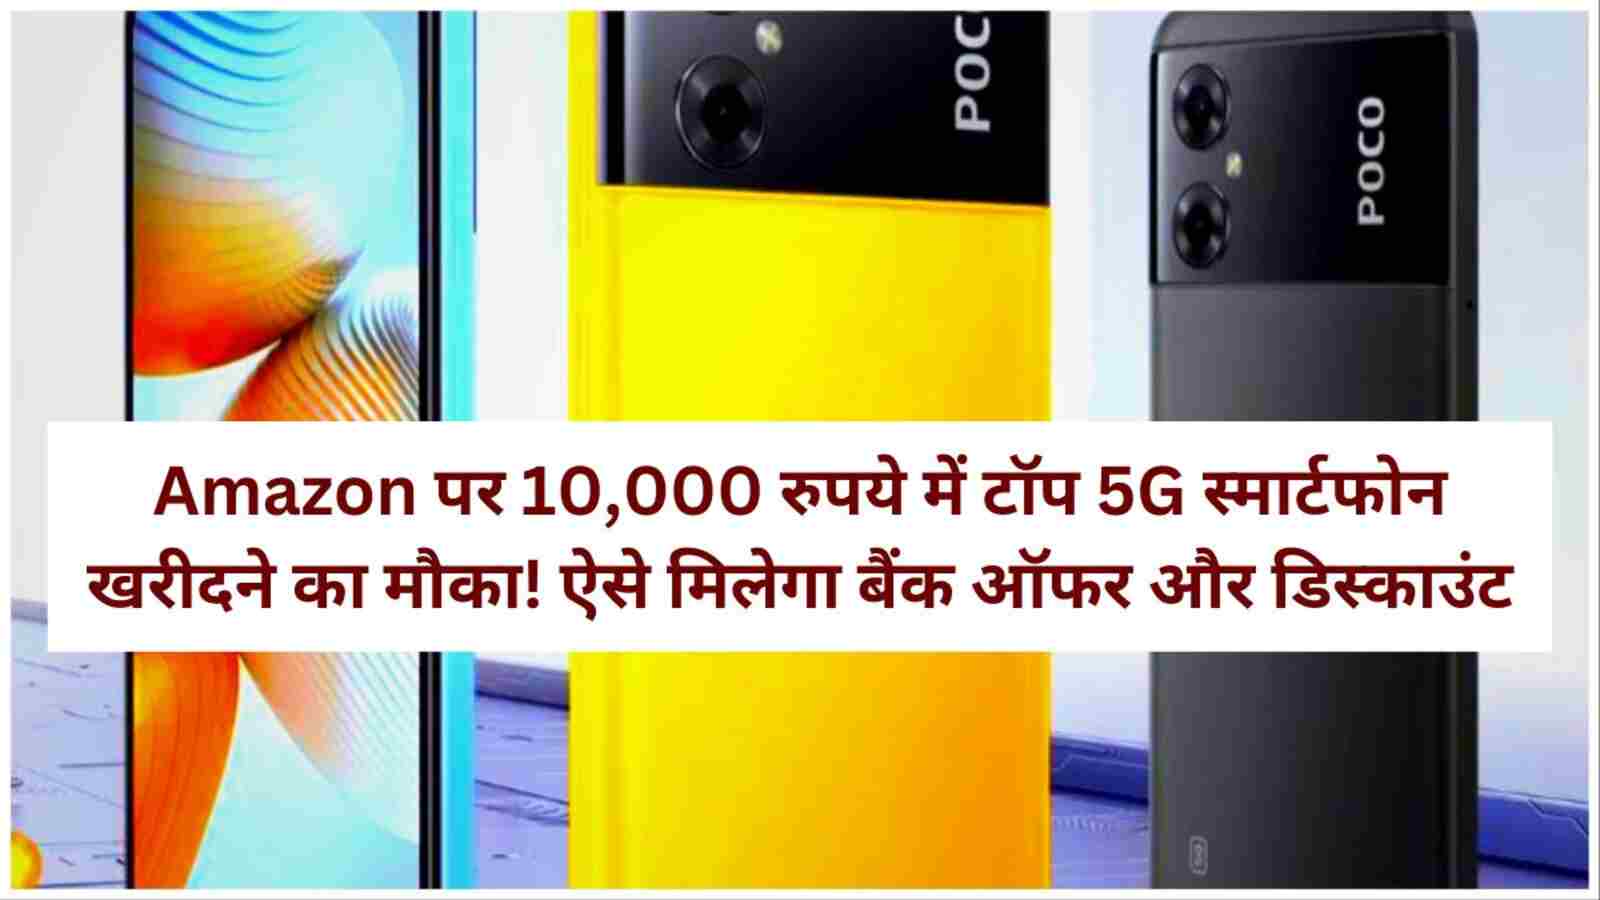 Amazon पर 10,000 रुपये में टॉप 5G स्मार्टफोन खरीदने का मौका! ऐसे मिलेगा बैंक ऑफर और डिस्काउंट